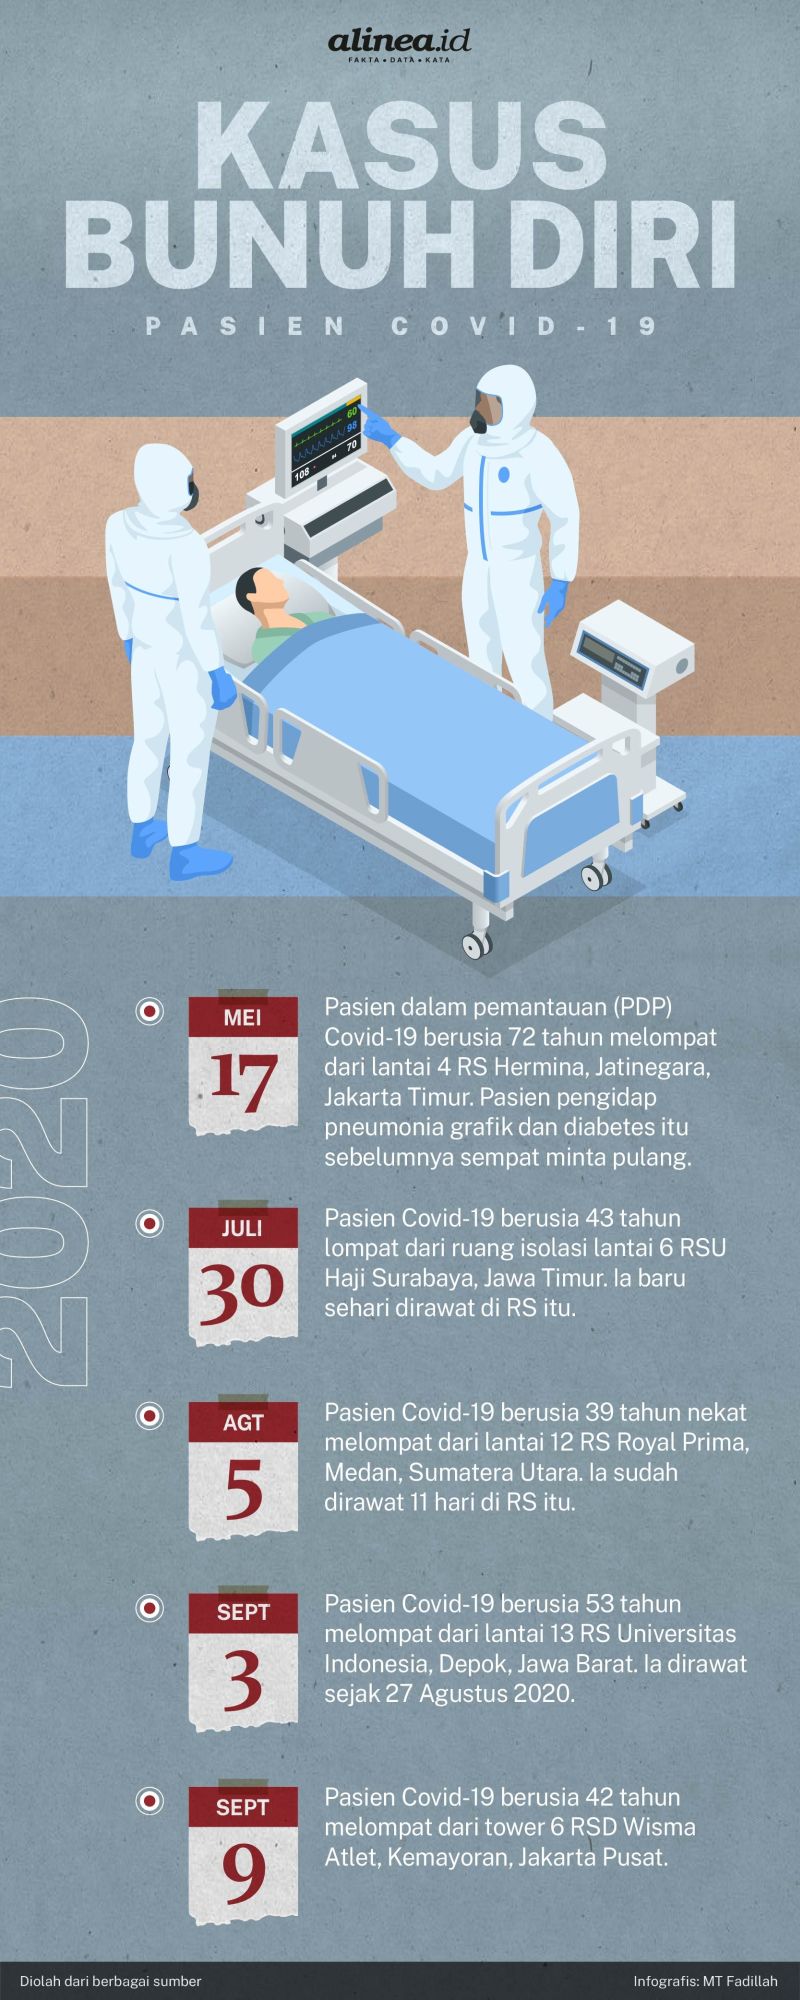 Infografik kasus bunuh diri pasien Covid-19. Alinea.id/MT Fadillah.